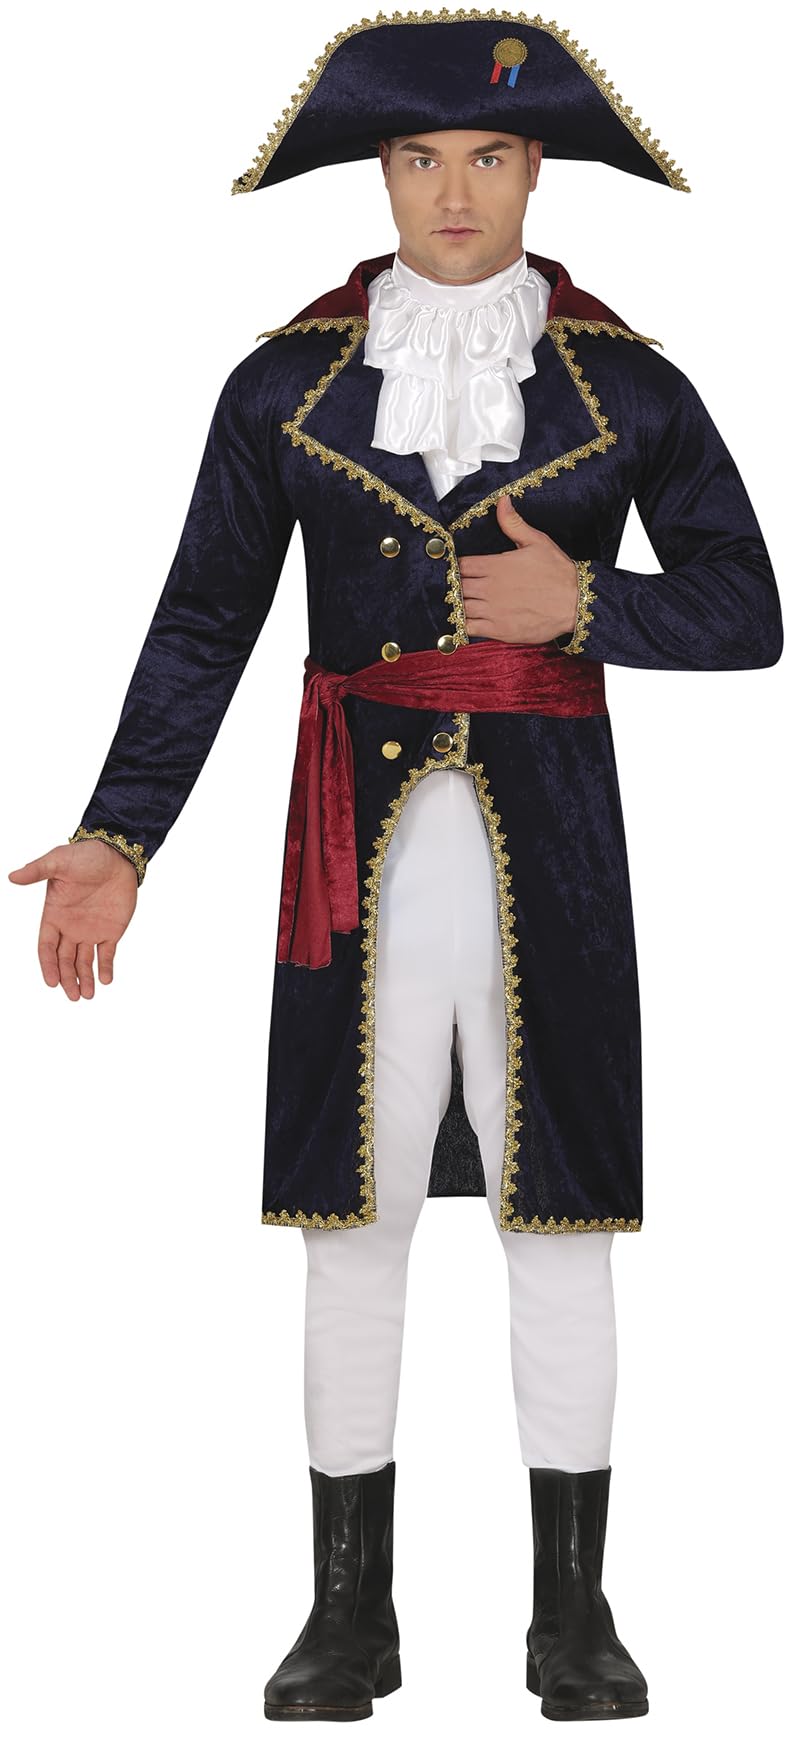 Fiestas GUiRCA Napoleon Herren Kostüm Karneval Fasching – Komplettes Französischer Kaiser Outfit inkl. Hut – Historisches Herren Kostüm Karneval Fasching Größe M 48-50